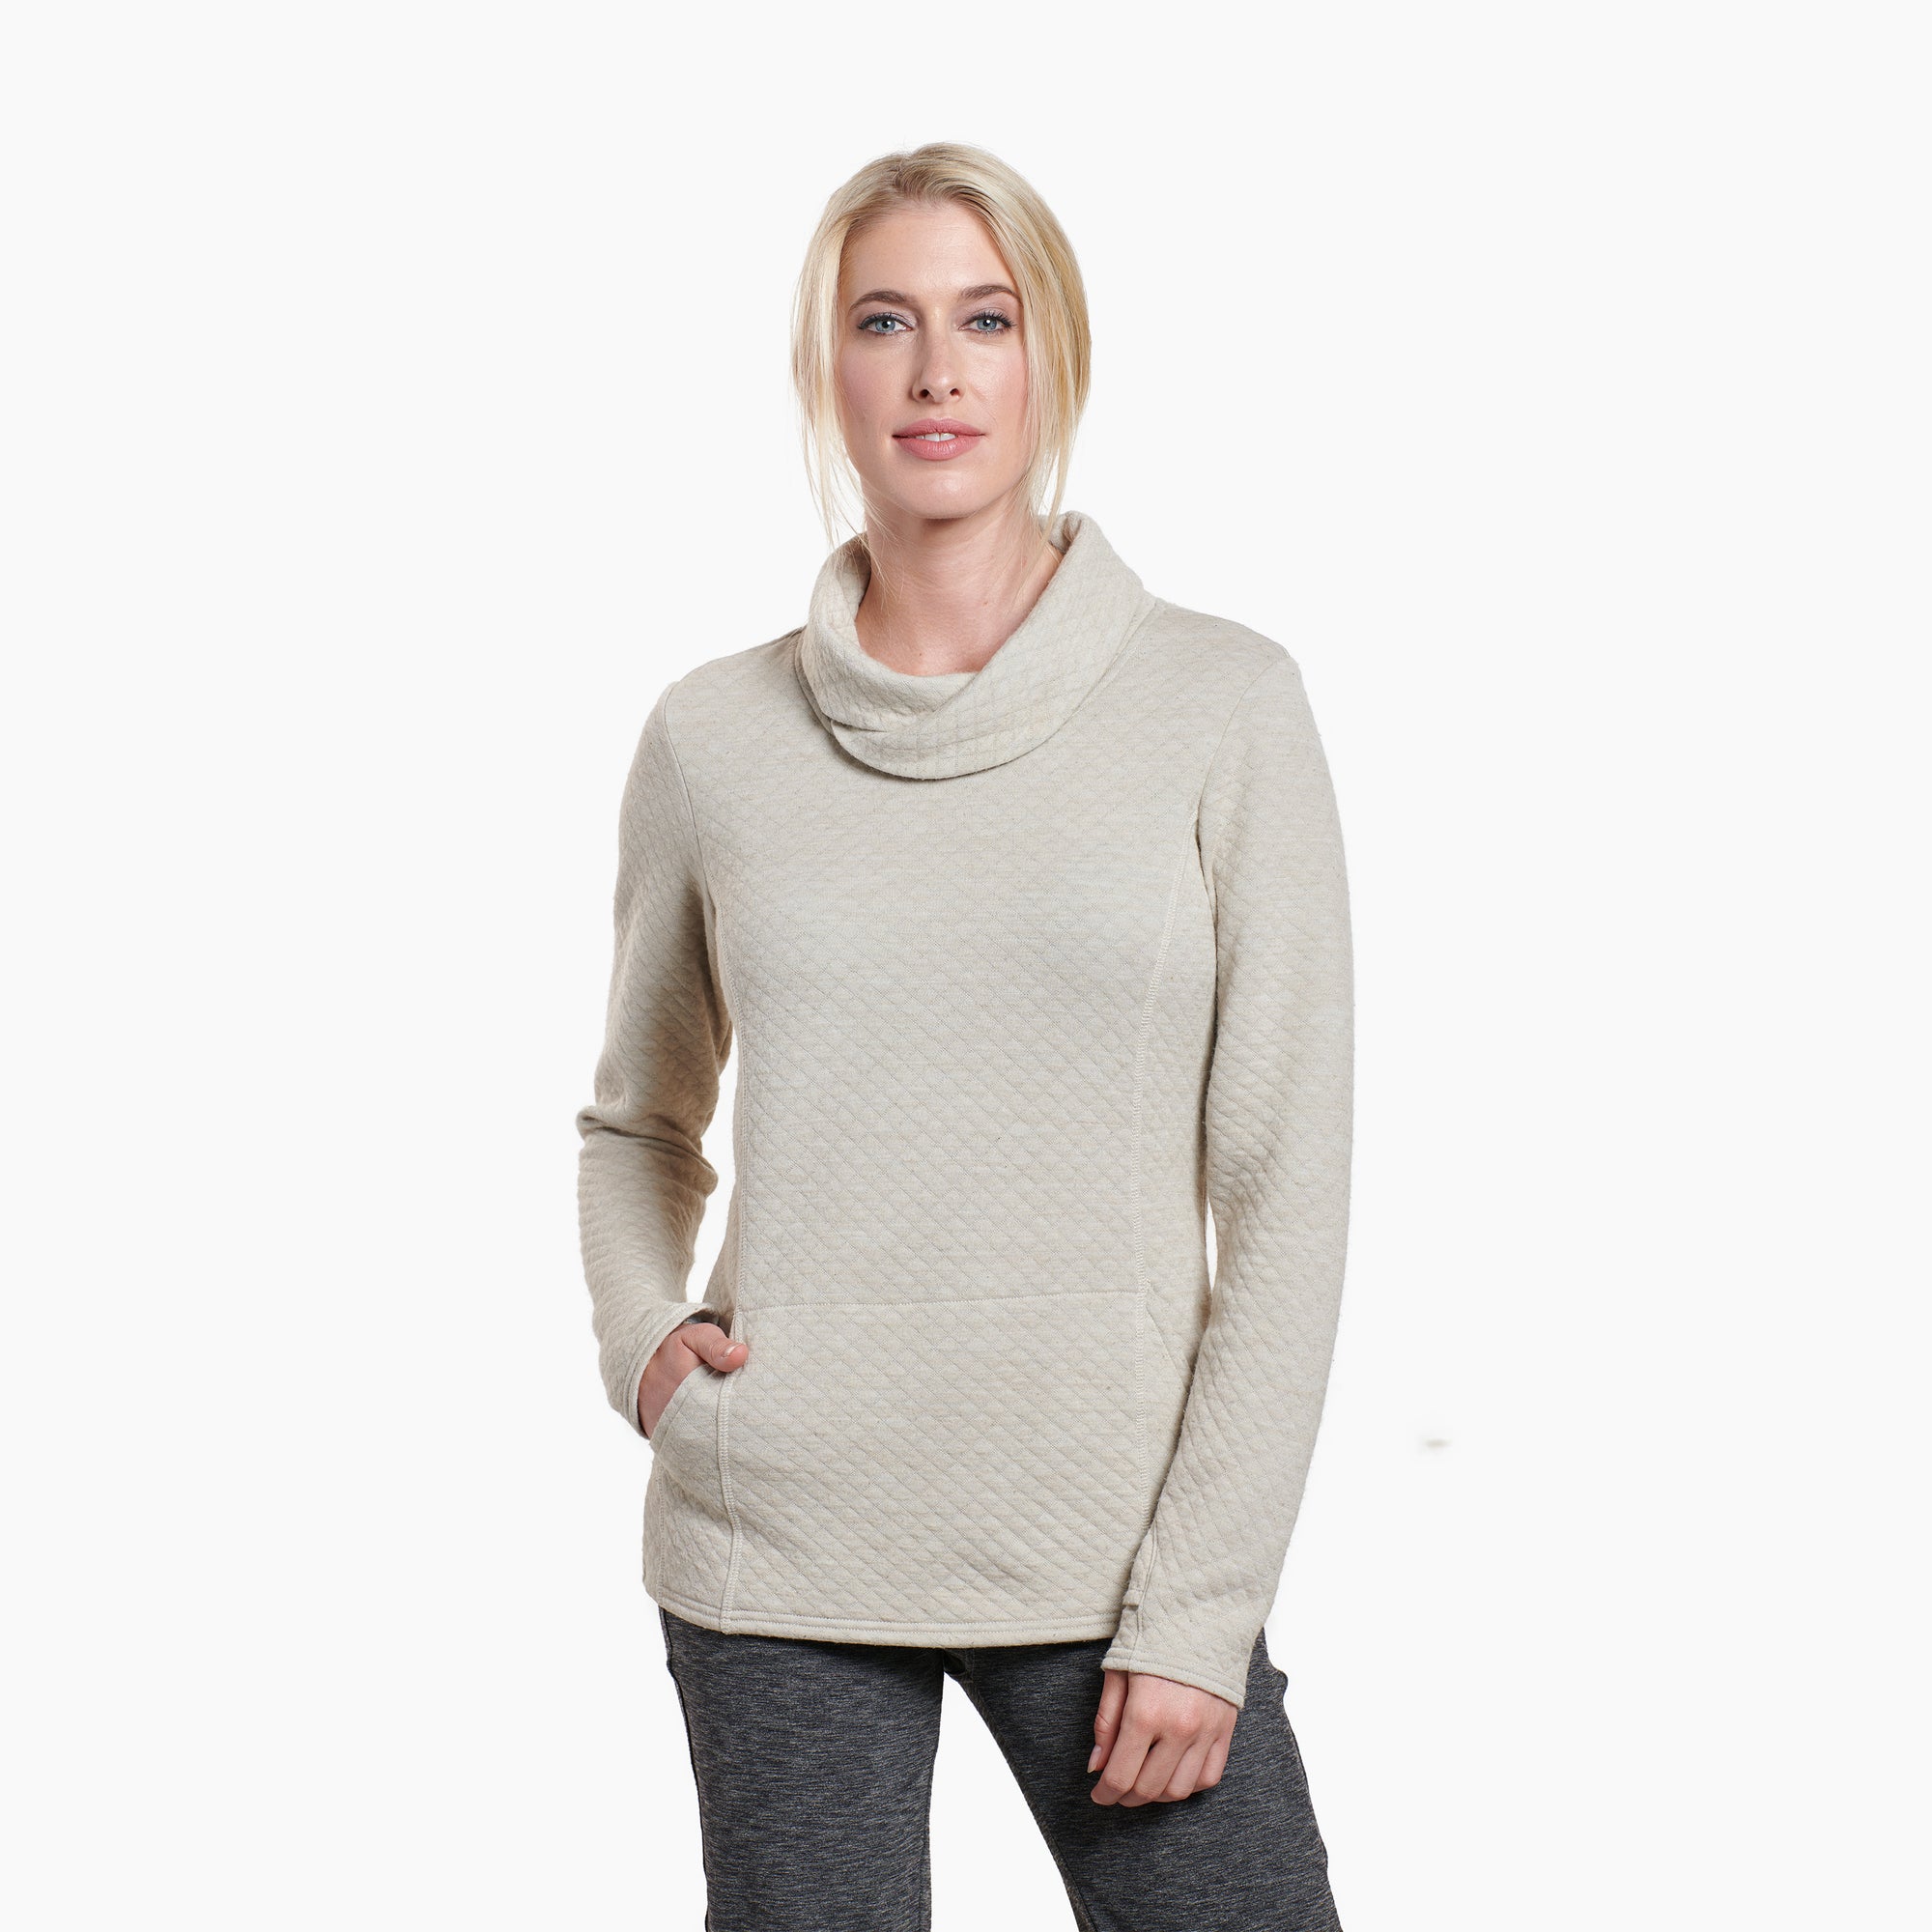 KÜHL Alpine Sweater - Women's